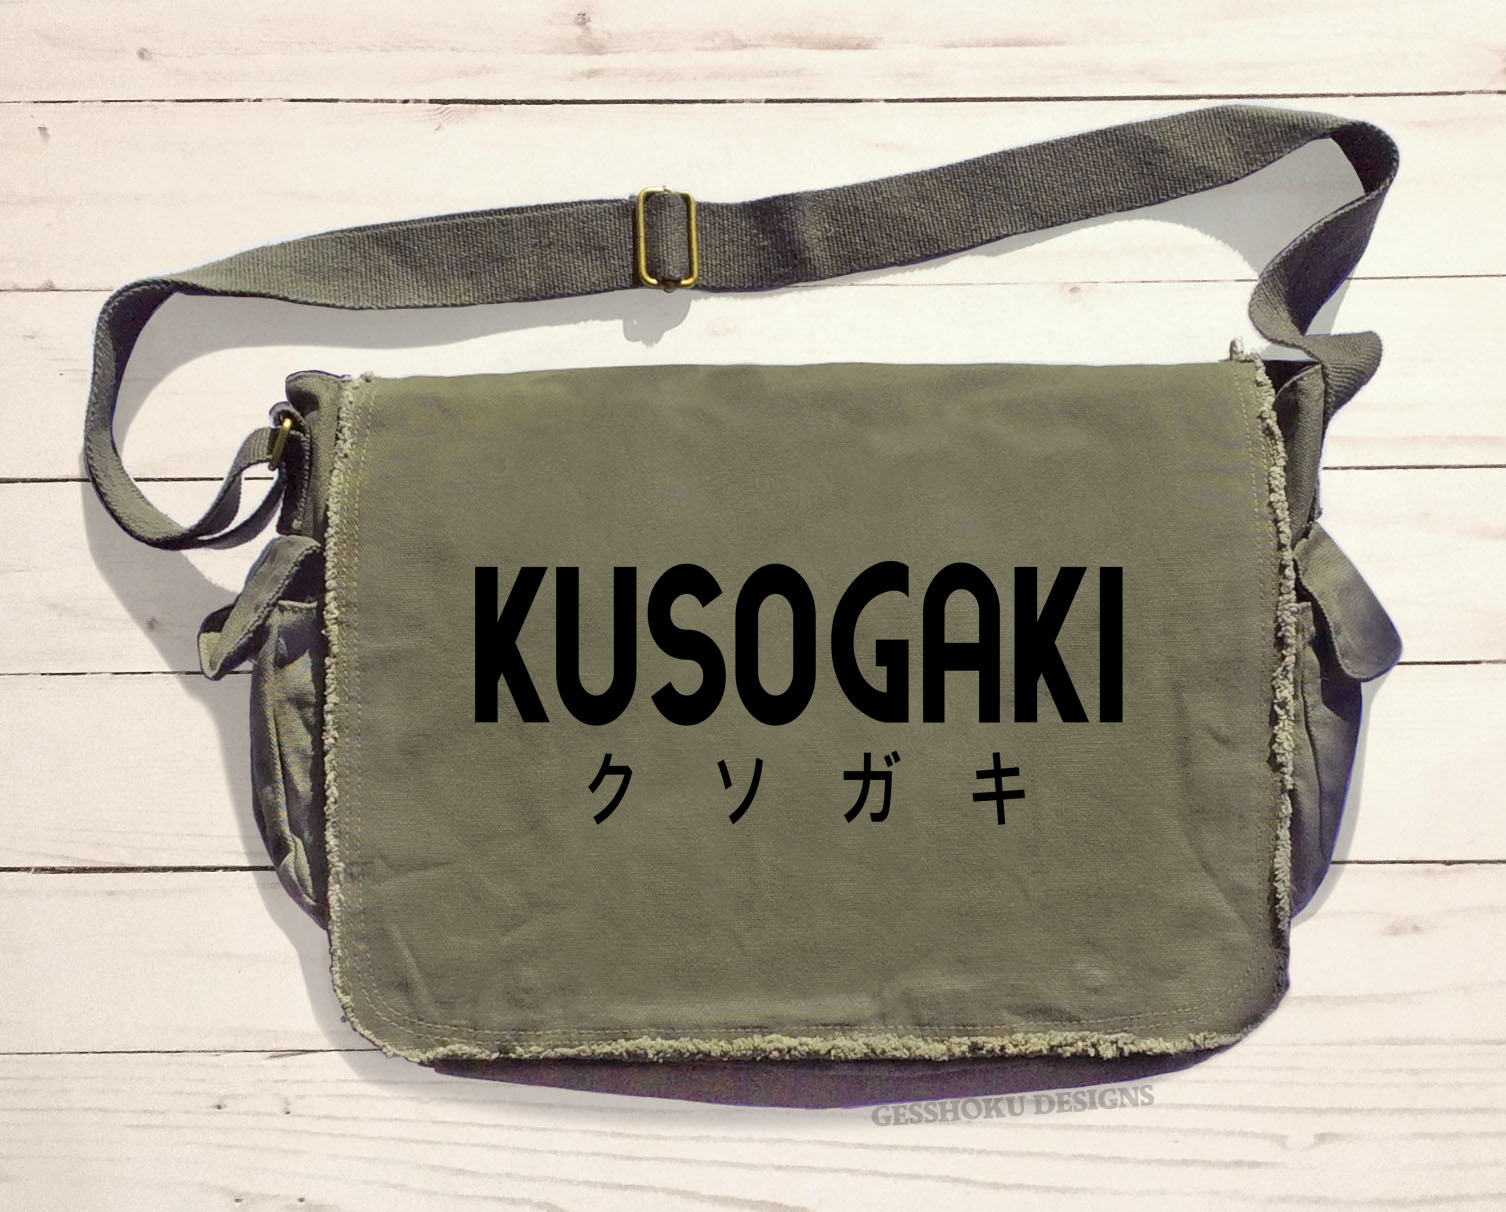 Kusogaki "Brat" Messenger Bag - Khaki Green